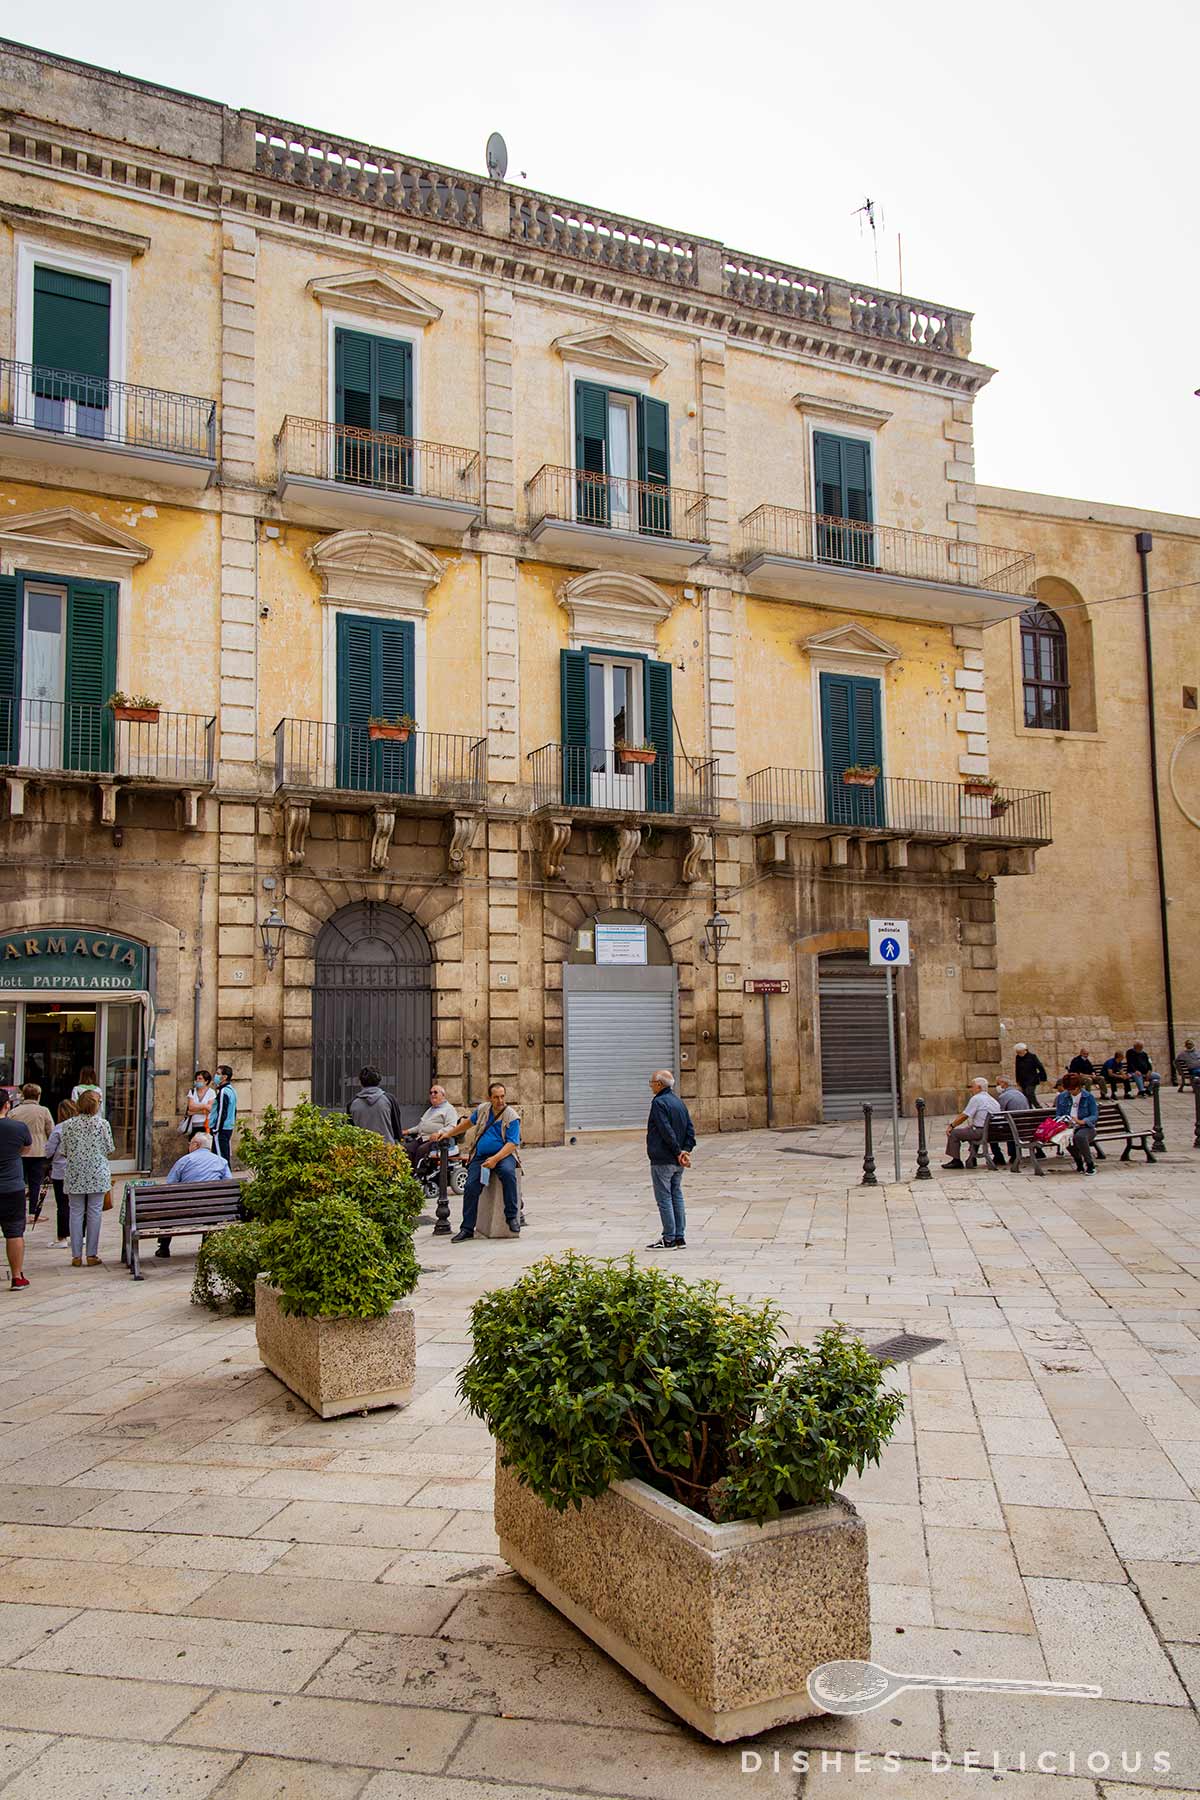 Stattlicher Palazzo an der Piazza Repubblica, davor Pflanzenkübel und Bänke, auf denen Senioren sitzen.